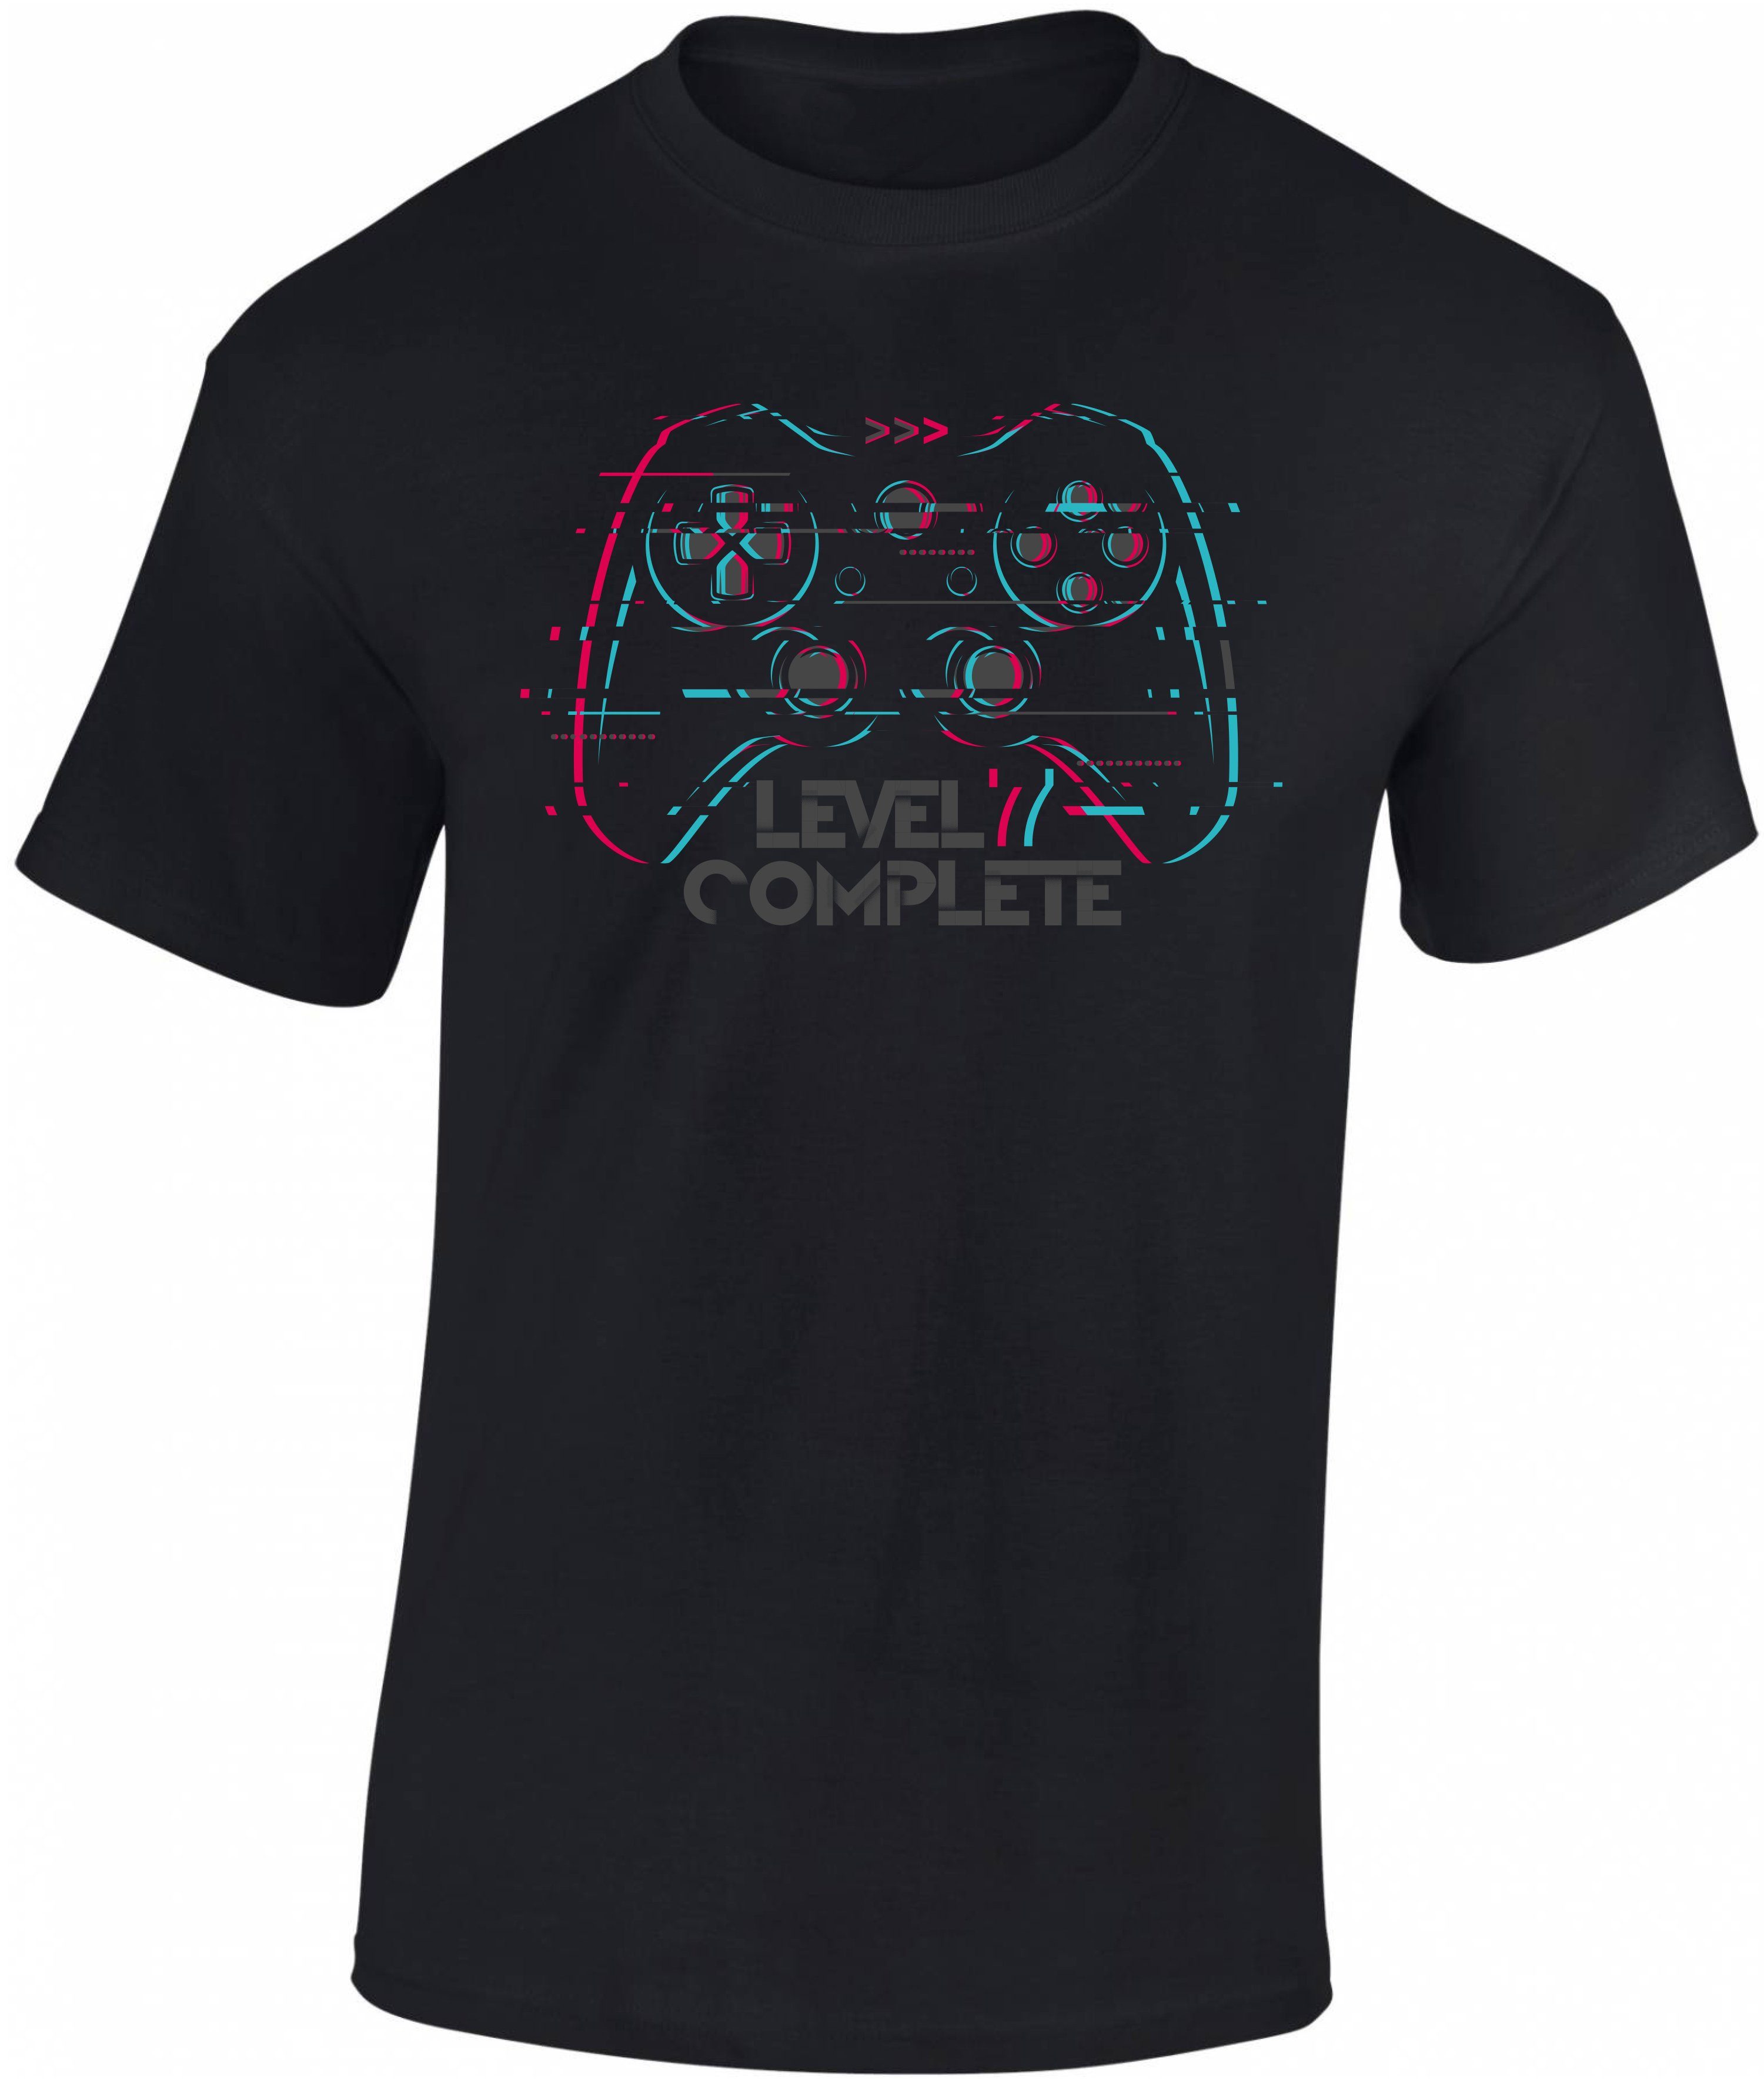 Siebdruck, Complete : Level Baumwolle 7 T-Shirt zum aus Geburtstag Gamer 7. Print-Shirt hochwertiger Jungen Baddery